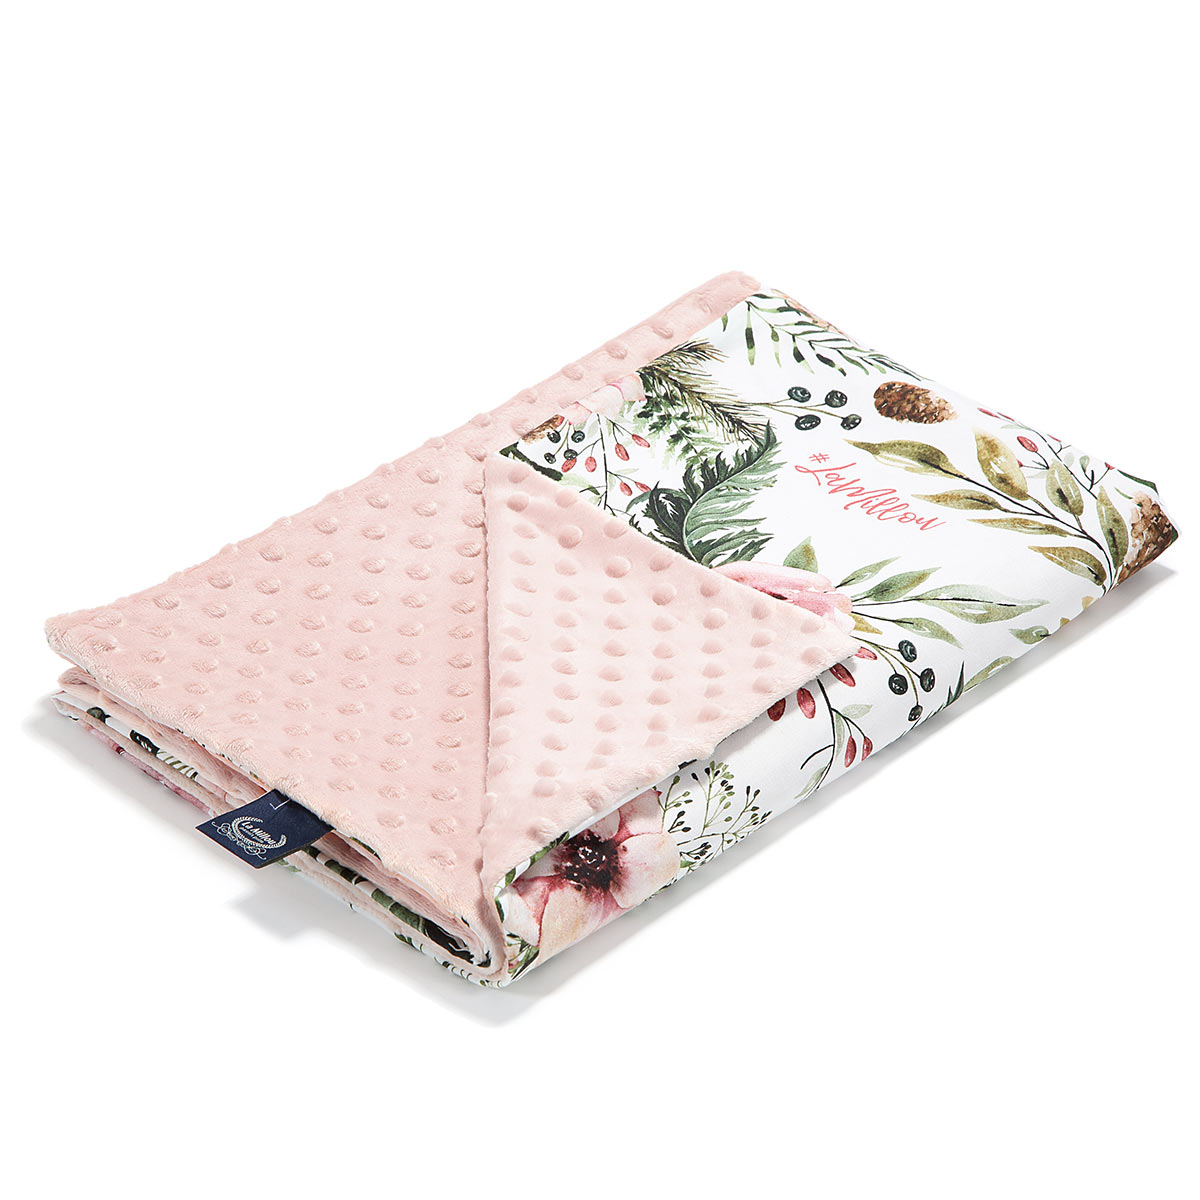 Κουβέρτα Minky Αγκαλιάς (80×100) La Millou Wild Blossom Minky Smoke Rose 274389